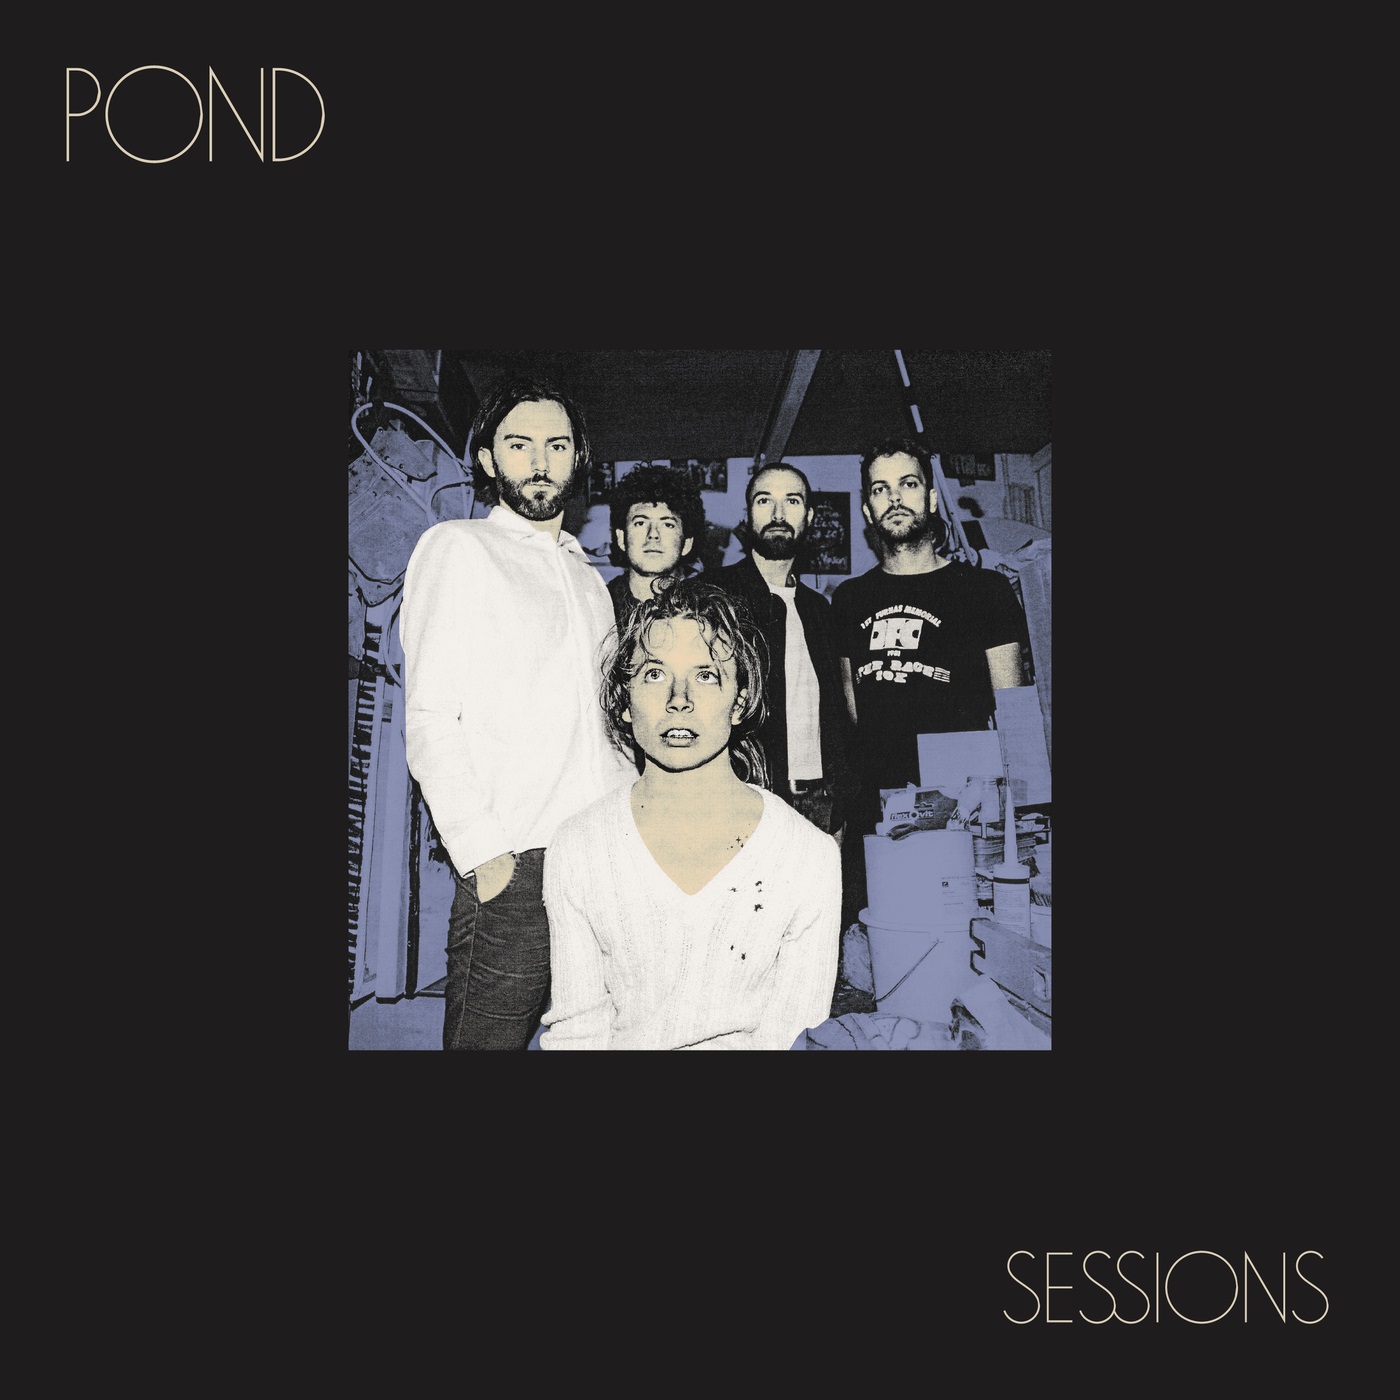 Pond – Sessions (Live) (2019) [Official Digital Download 24bit/48kHz]